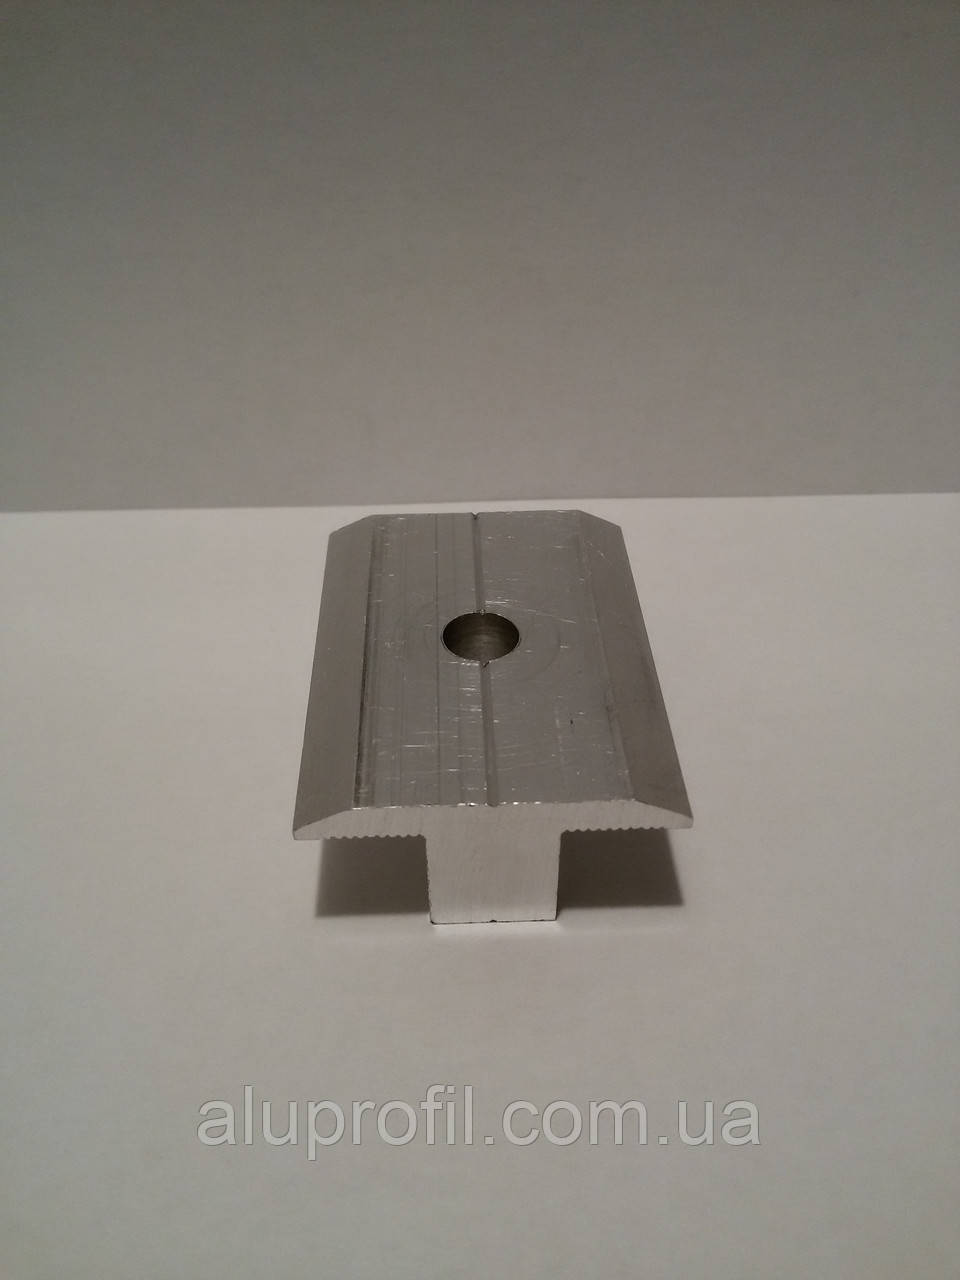 Алюмінієвий профіль — Притиск межмодульный алюмінієвий 37,5 х 13 - 50 мм.